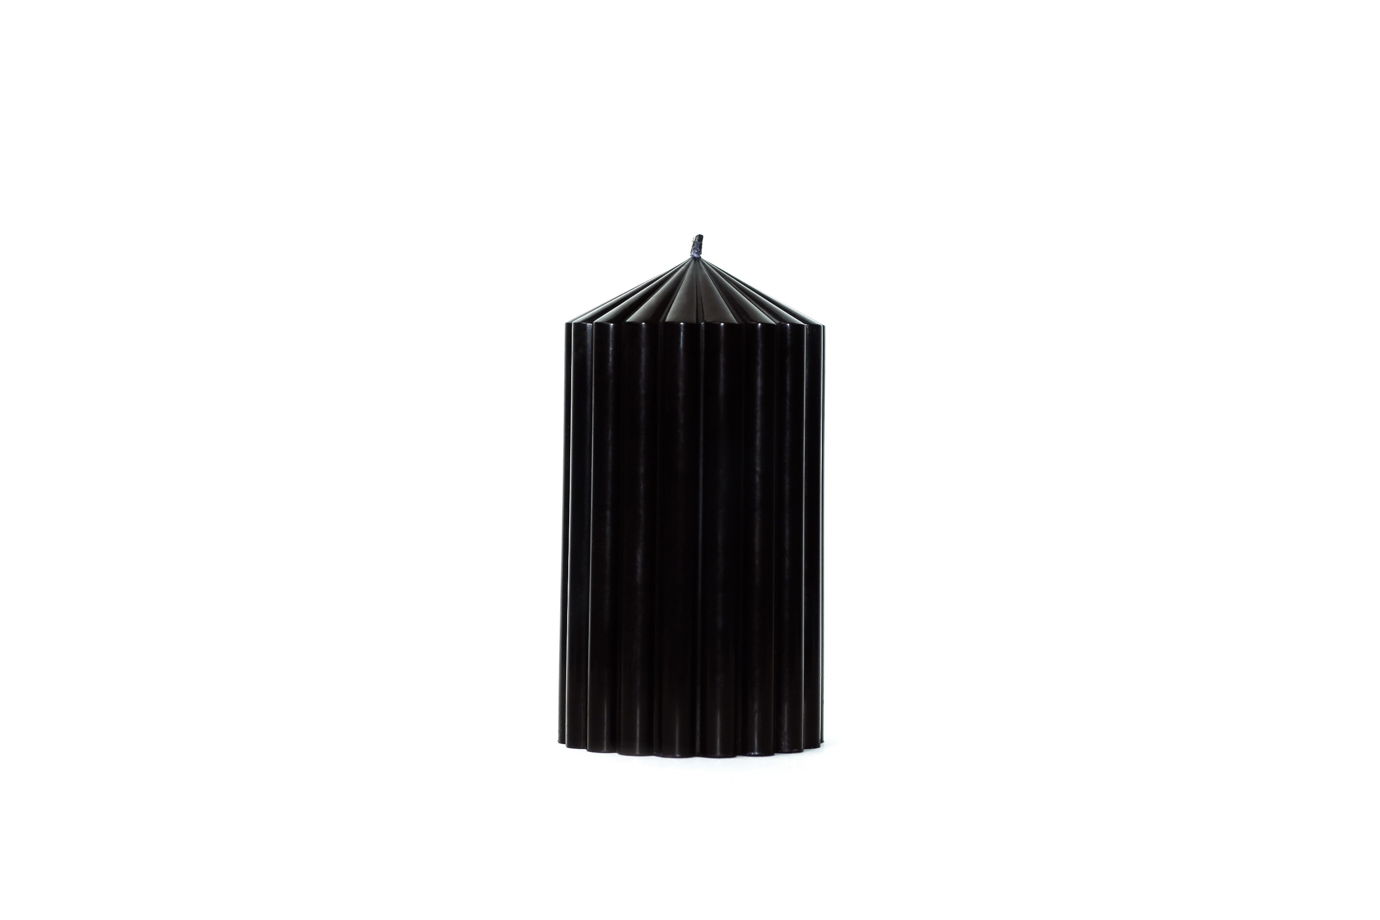 Декоративная фактурная свеча SIGIL 130*70 цвет Черный